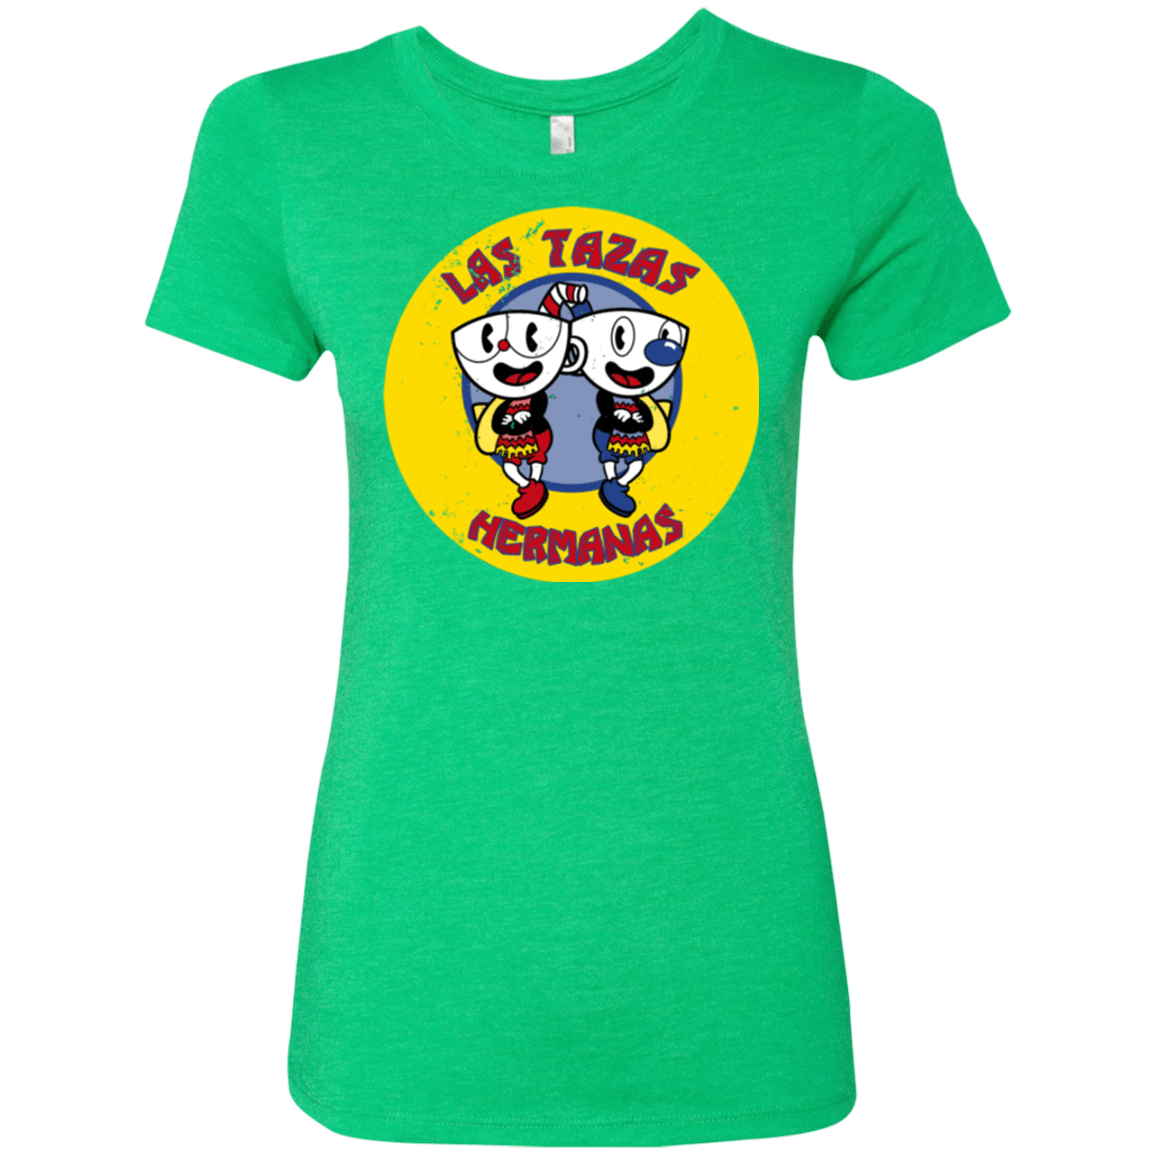 T-Shirts Envy / Small las tazas hermanas Women's Triblend T-Shirt